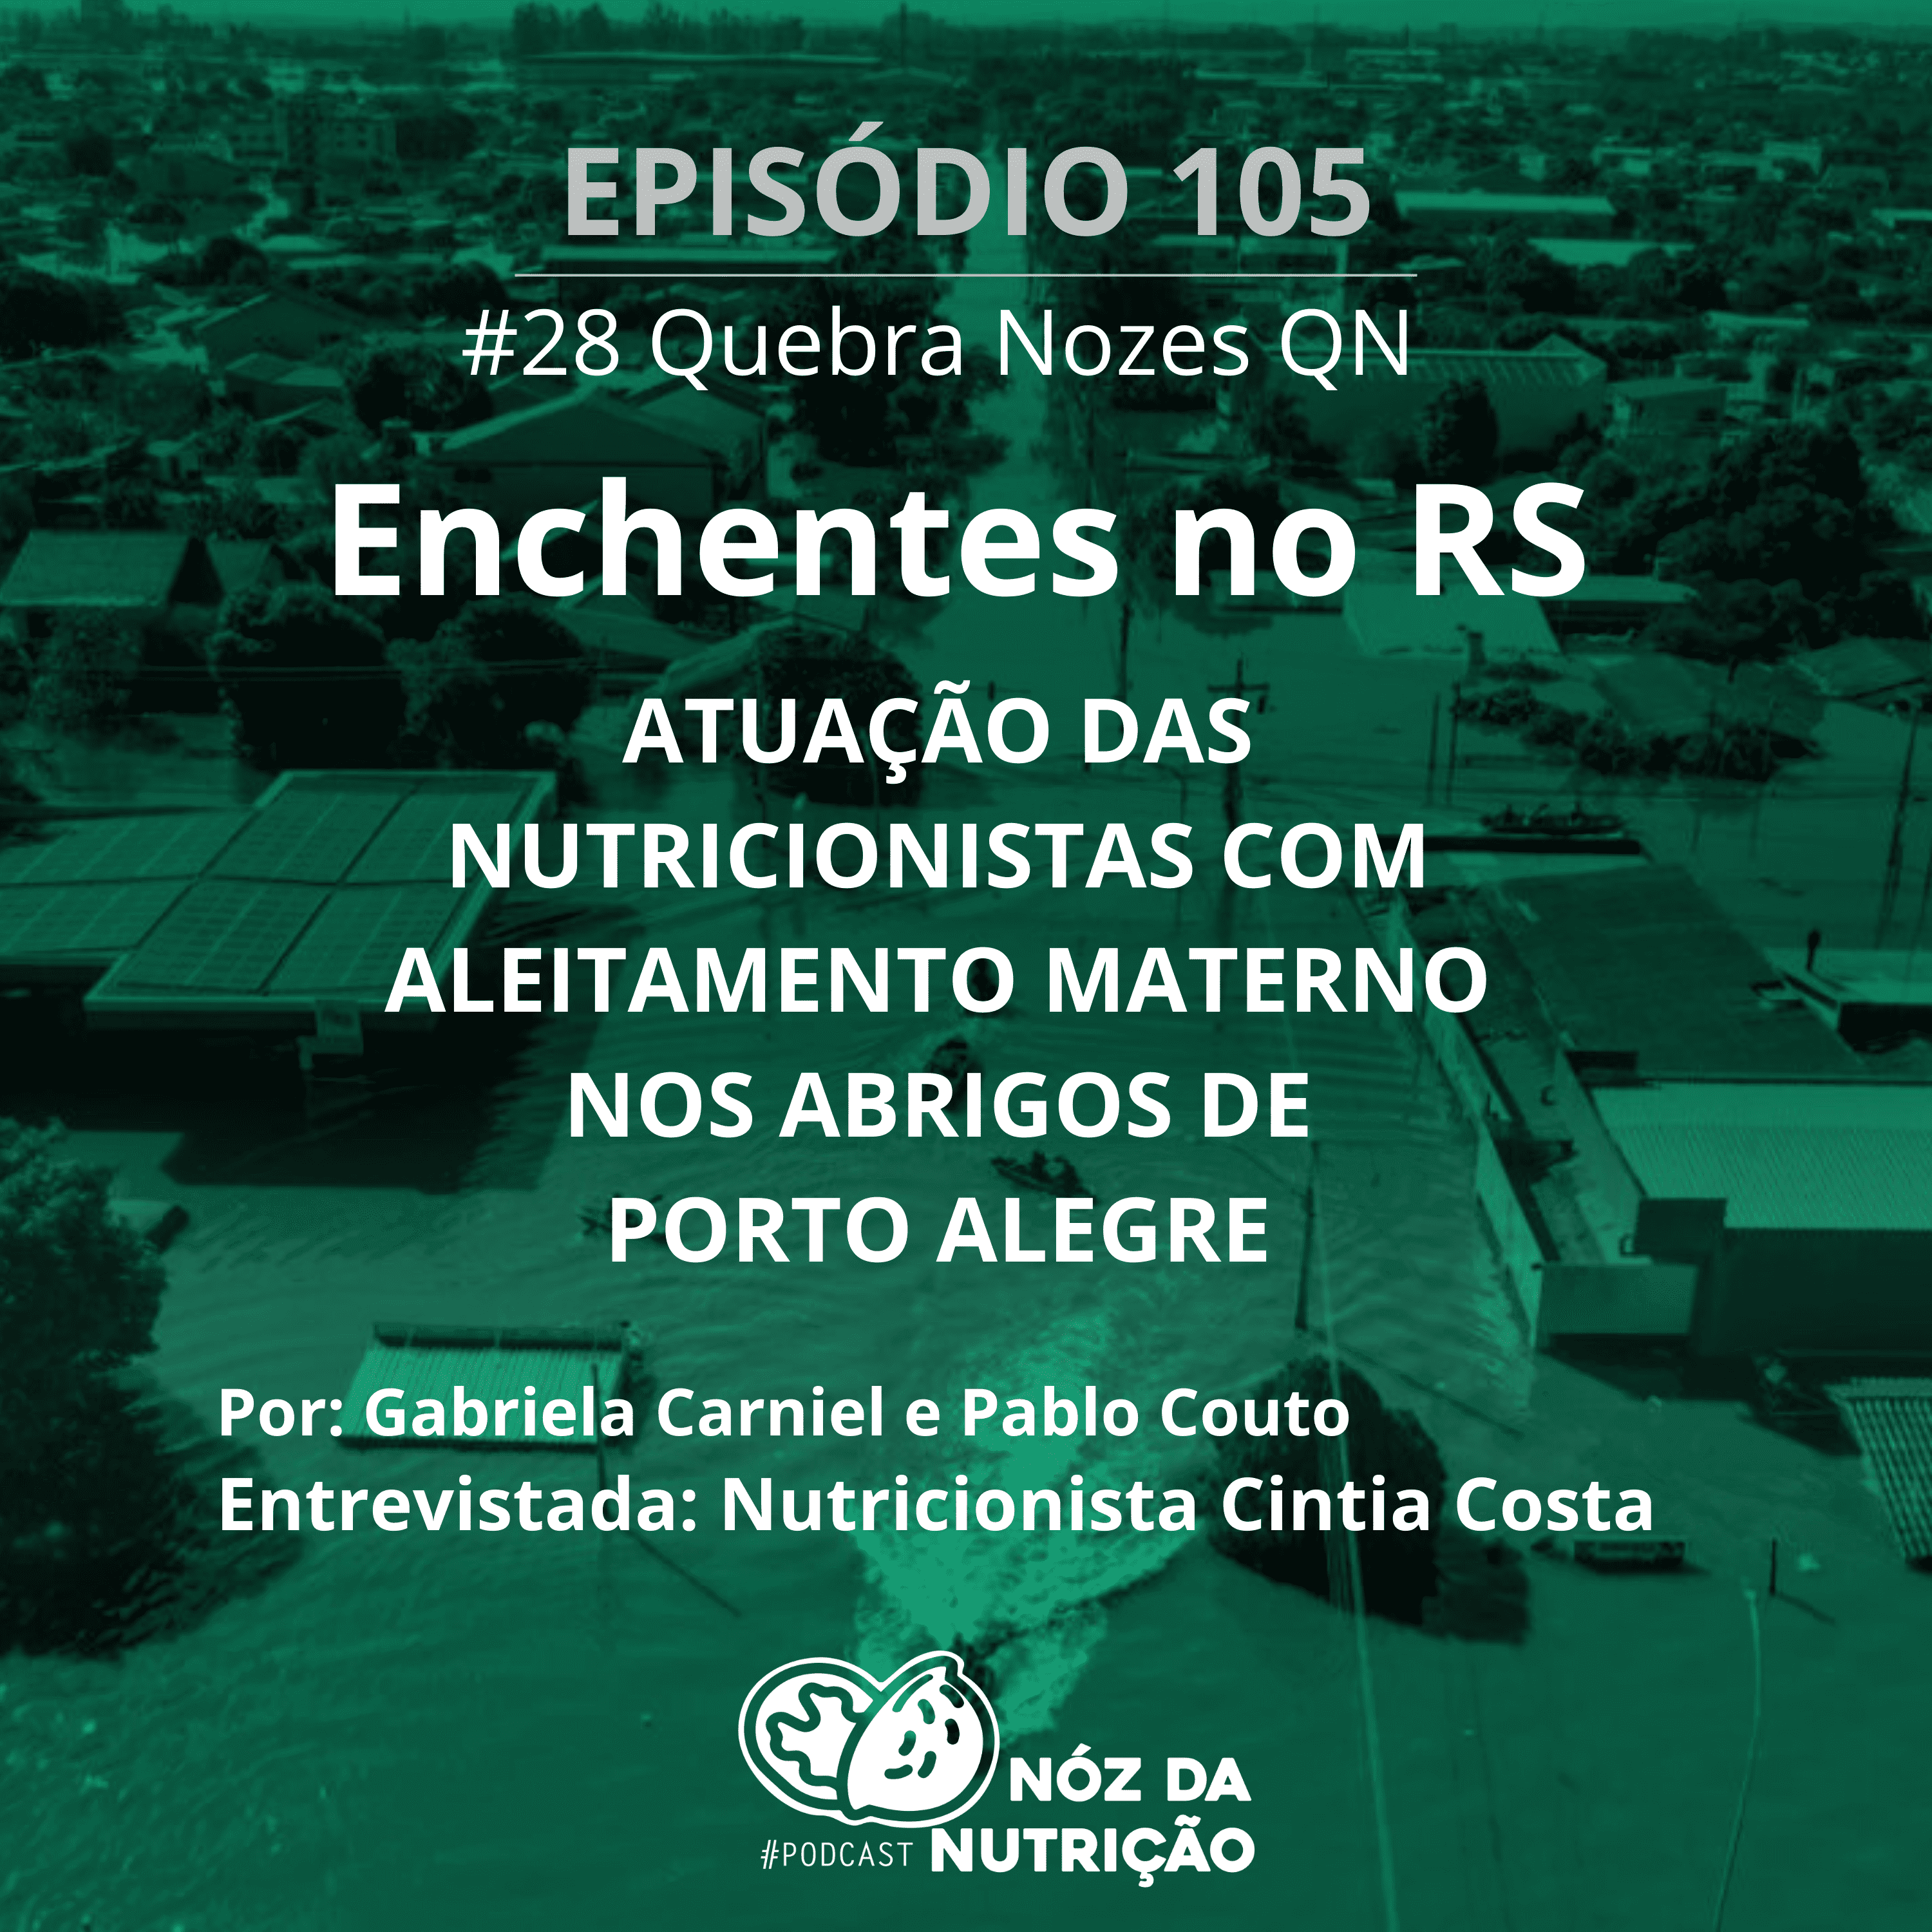 Enchentes no RS -Atuação das Nutricionistas com aleitamento materno em abrigos de Porto Alegre – QN #105